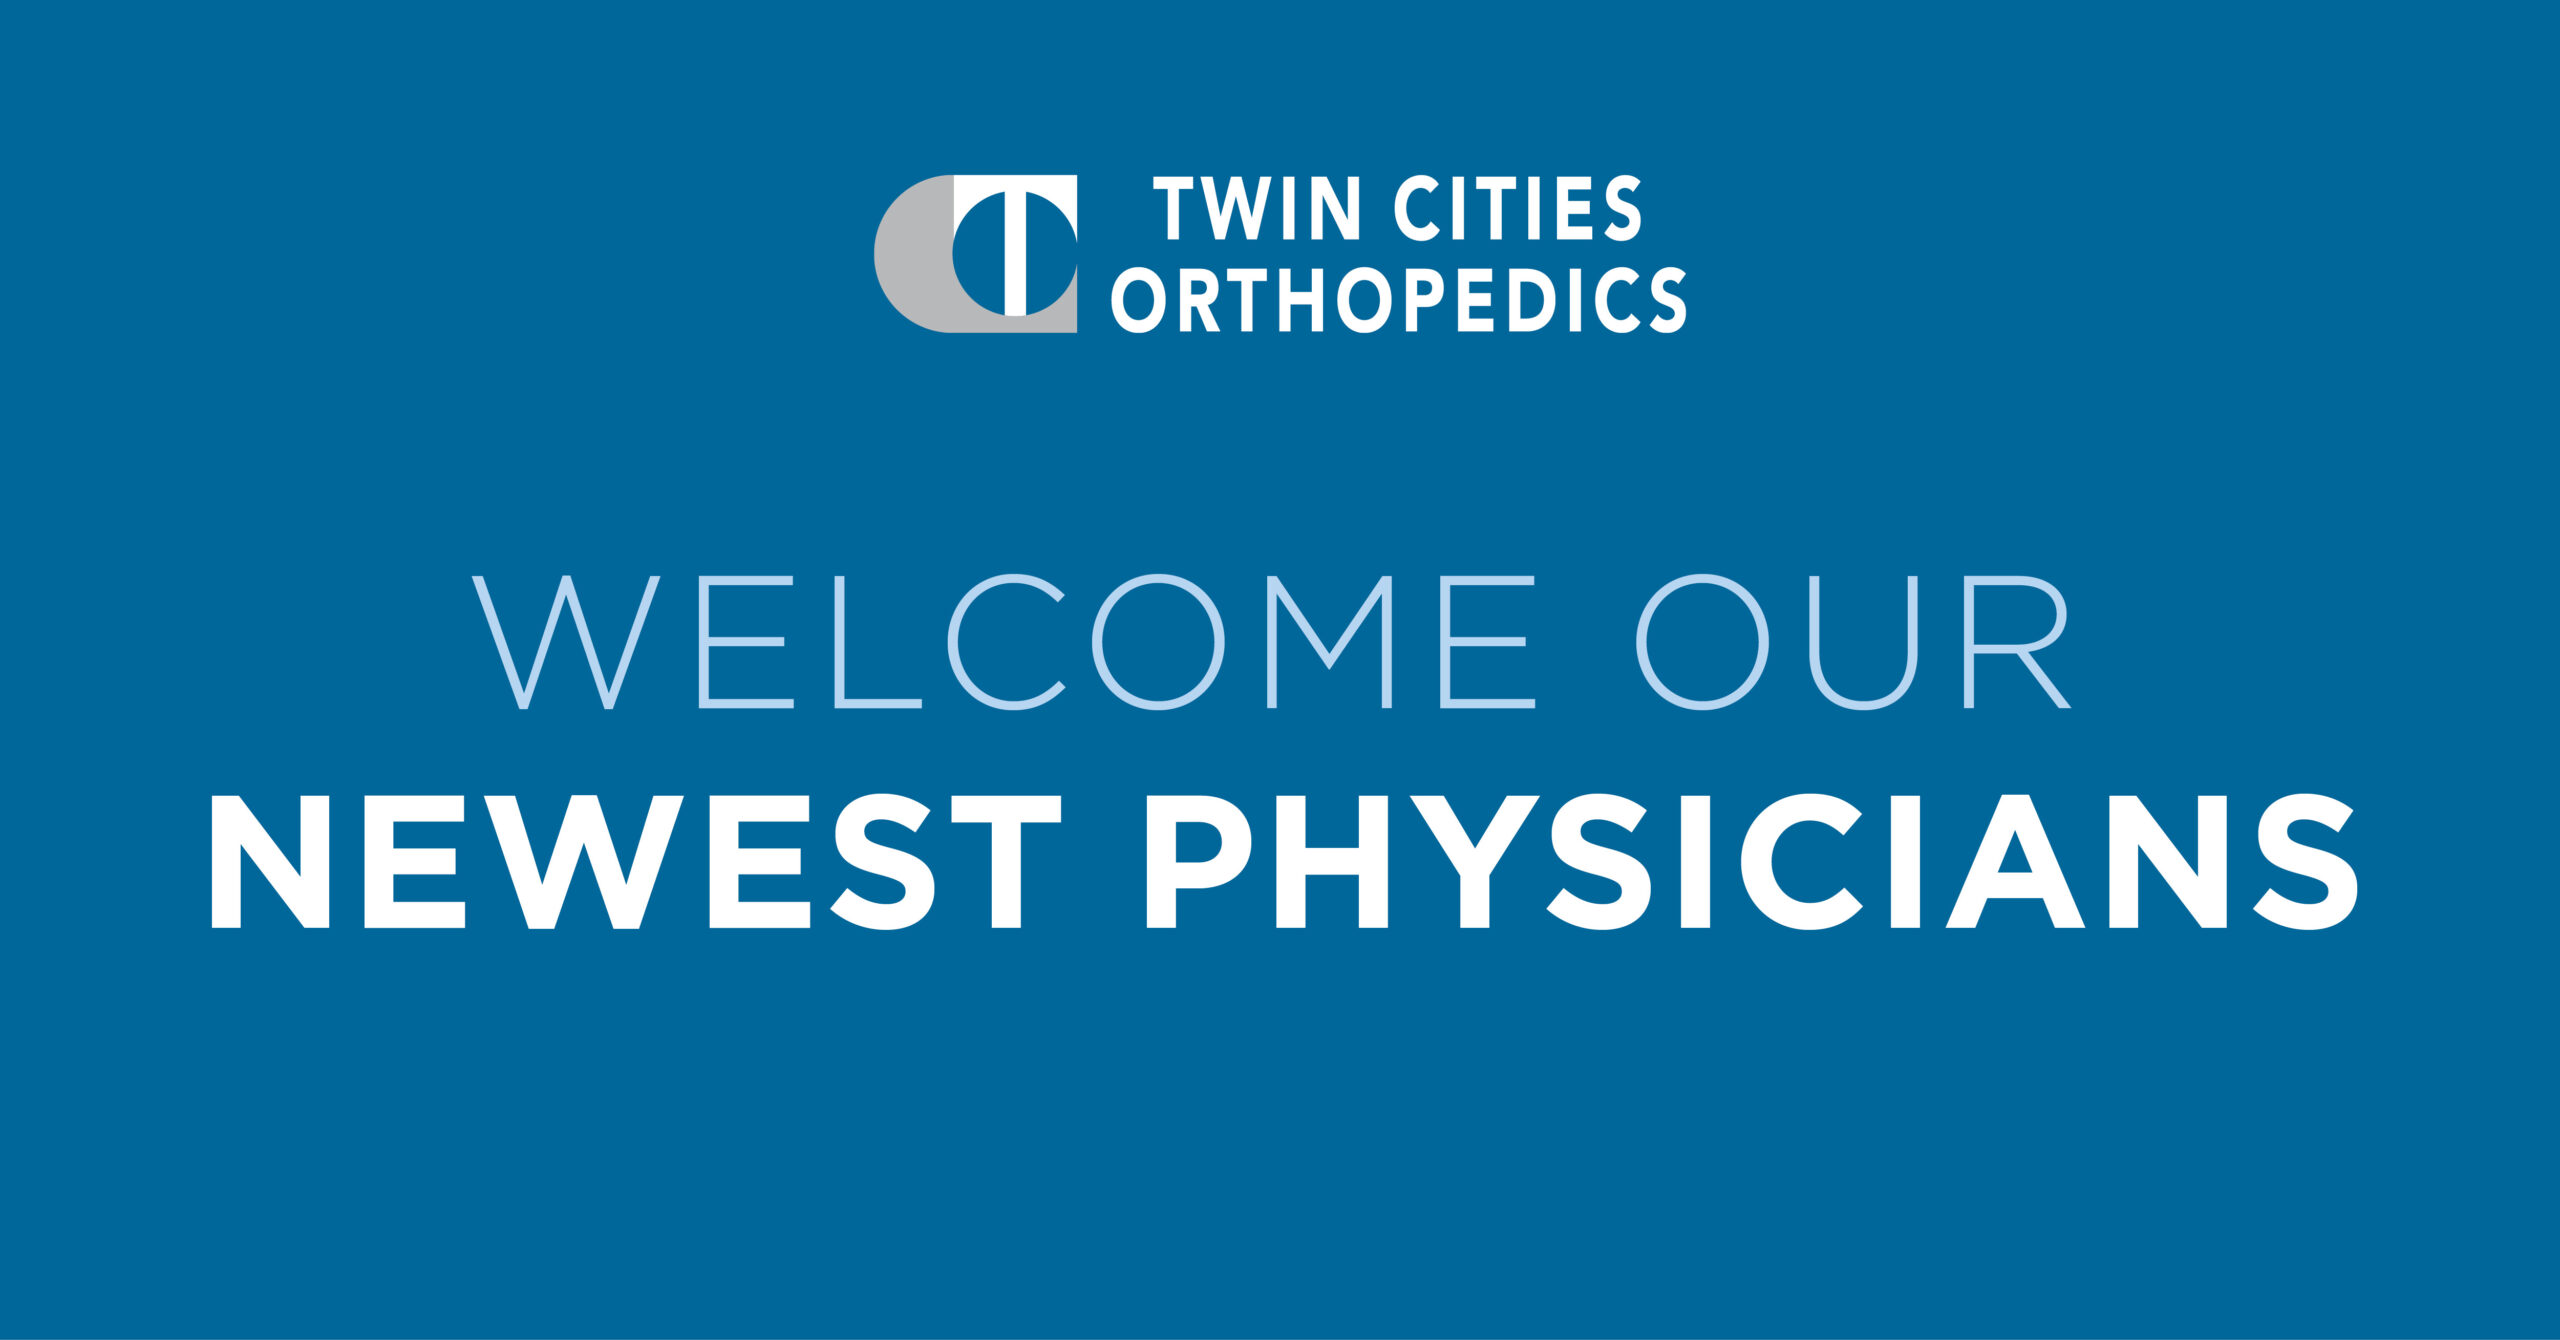 Twin Cities Orthopedics - Orthopedic Specialists & Clinics - Minnesota